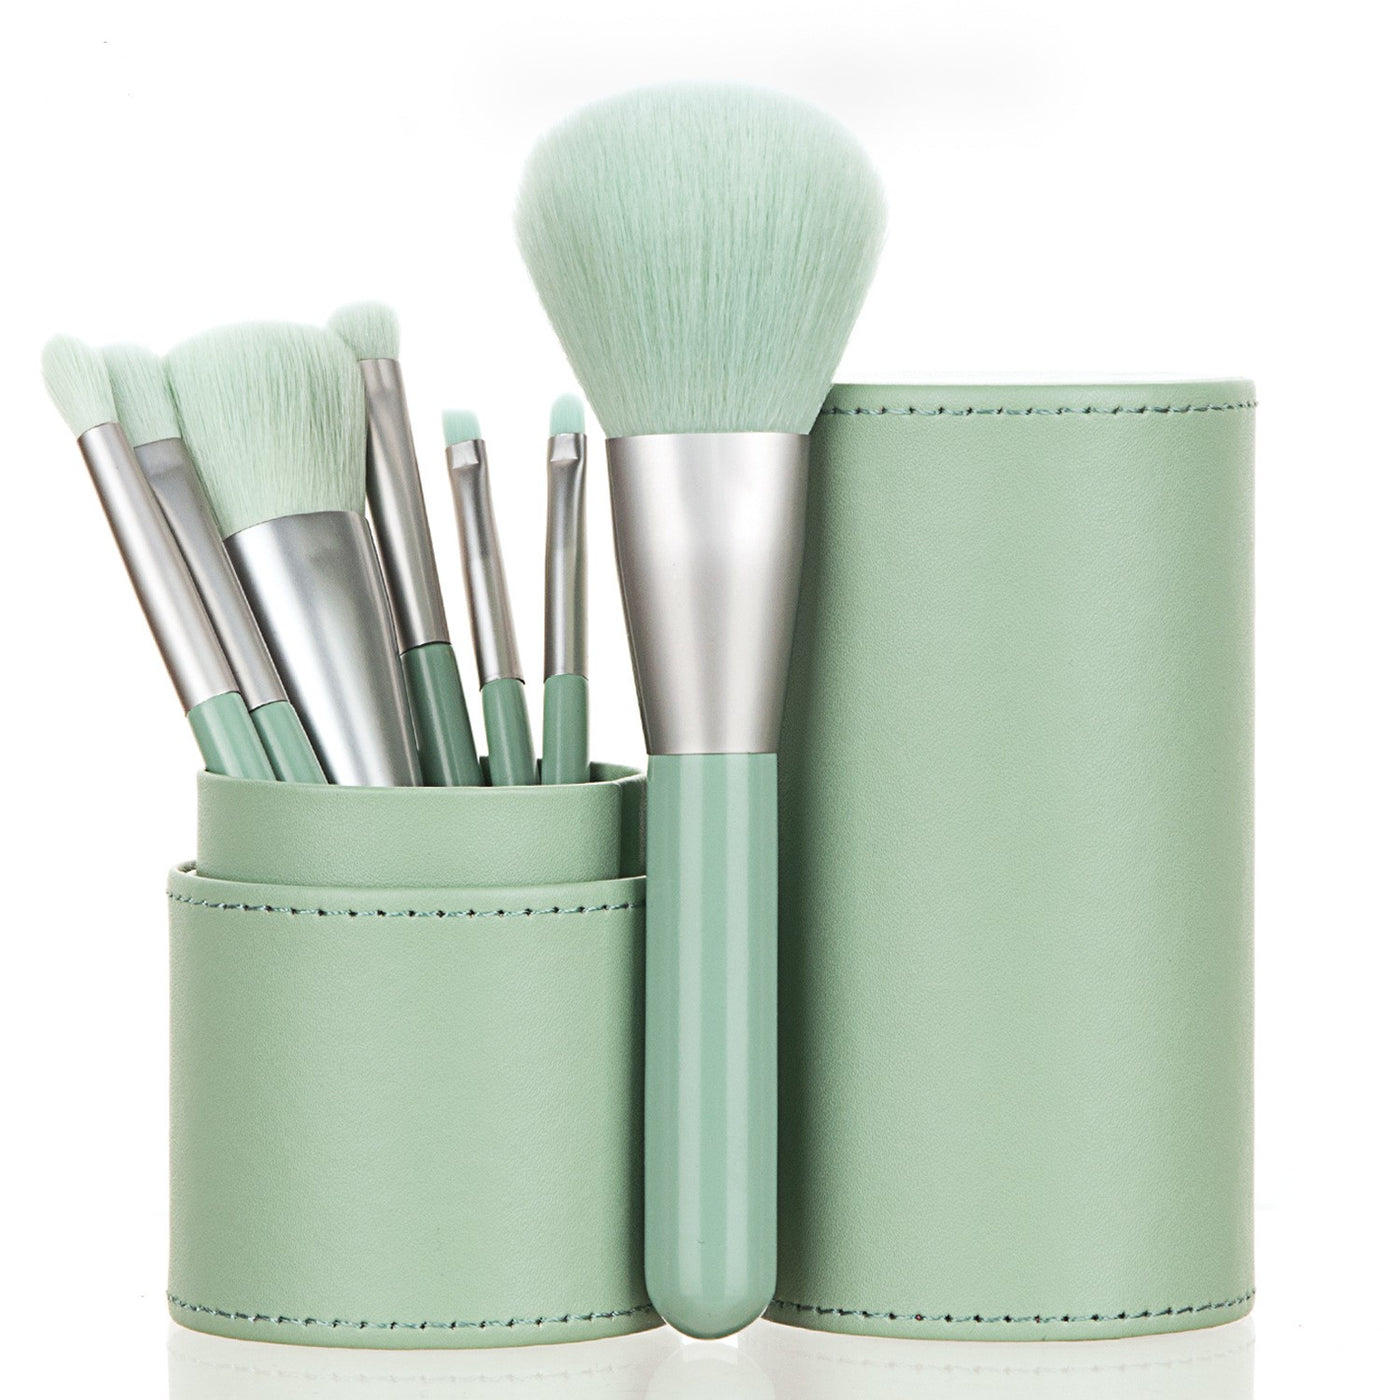 7 Makeup Brushes Portable Mini